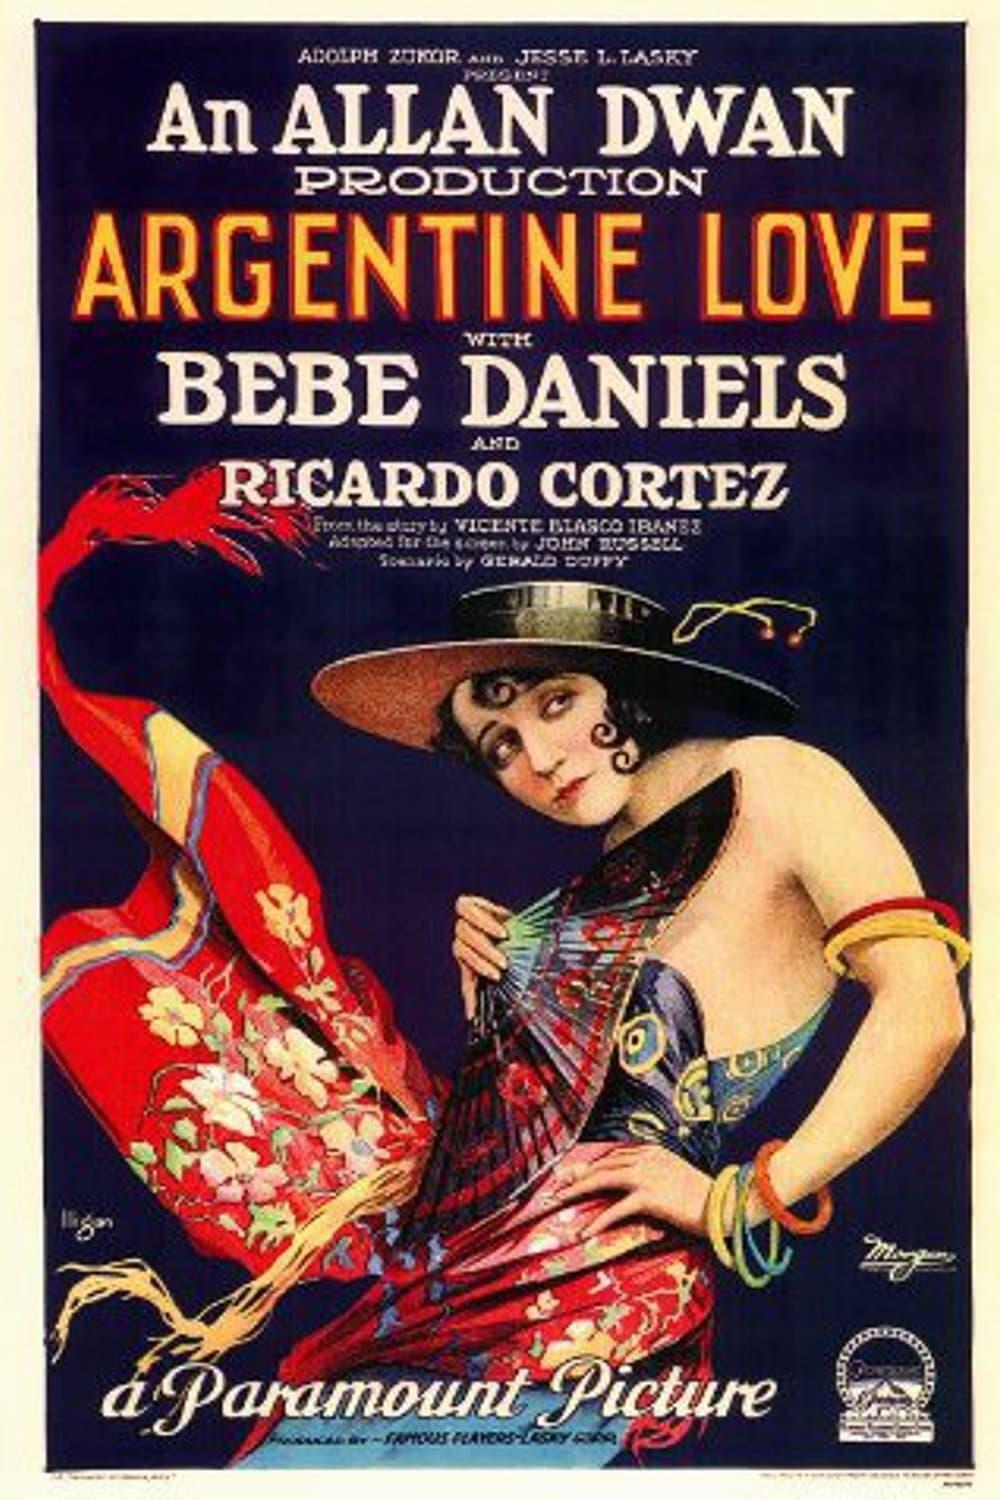 Argentine Love poster